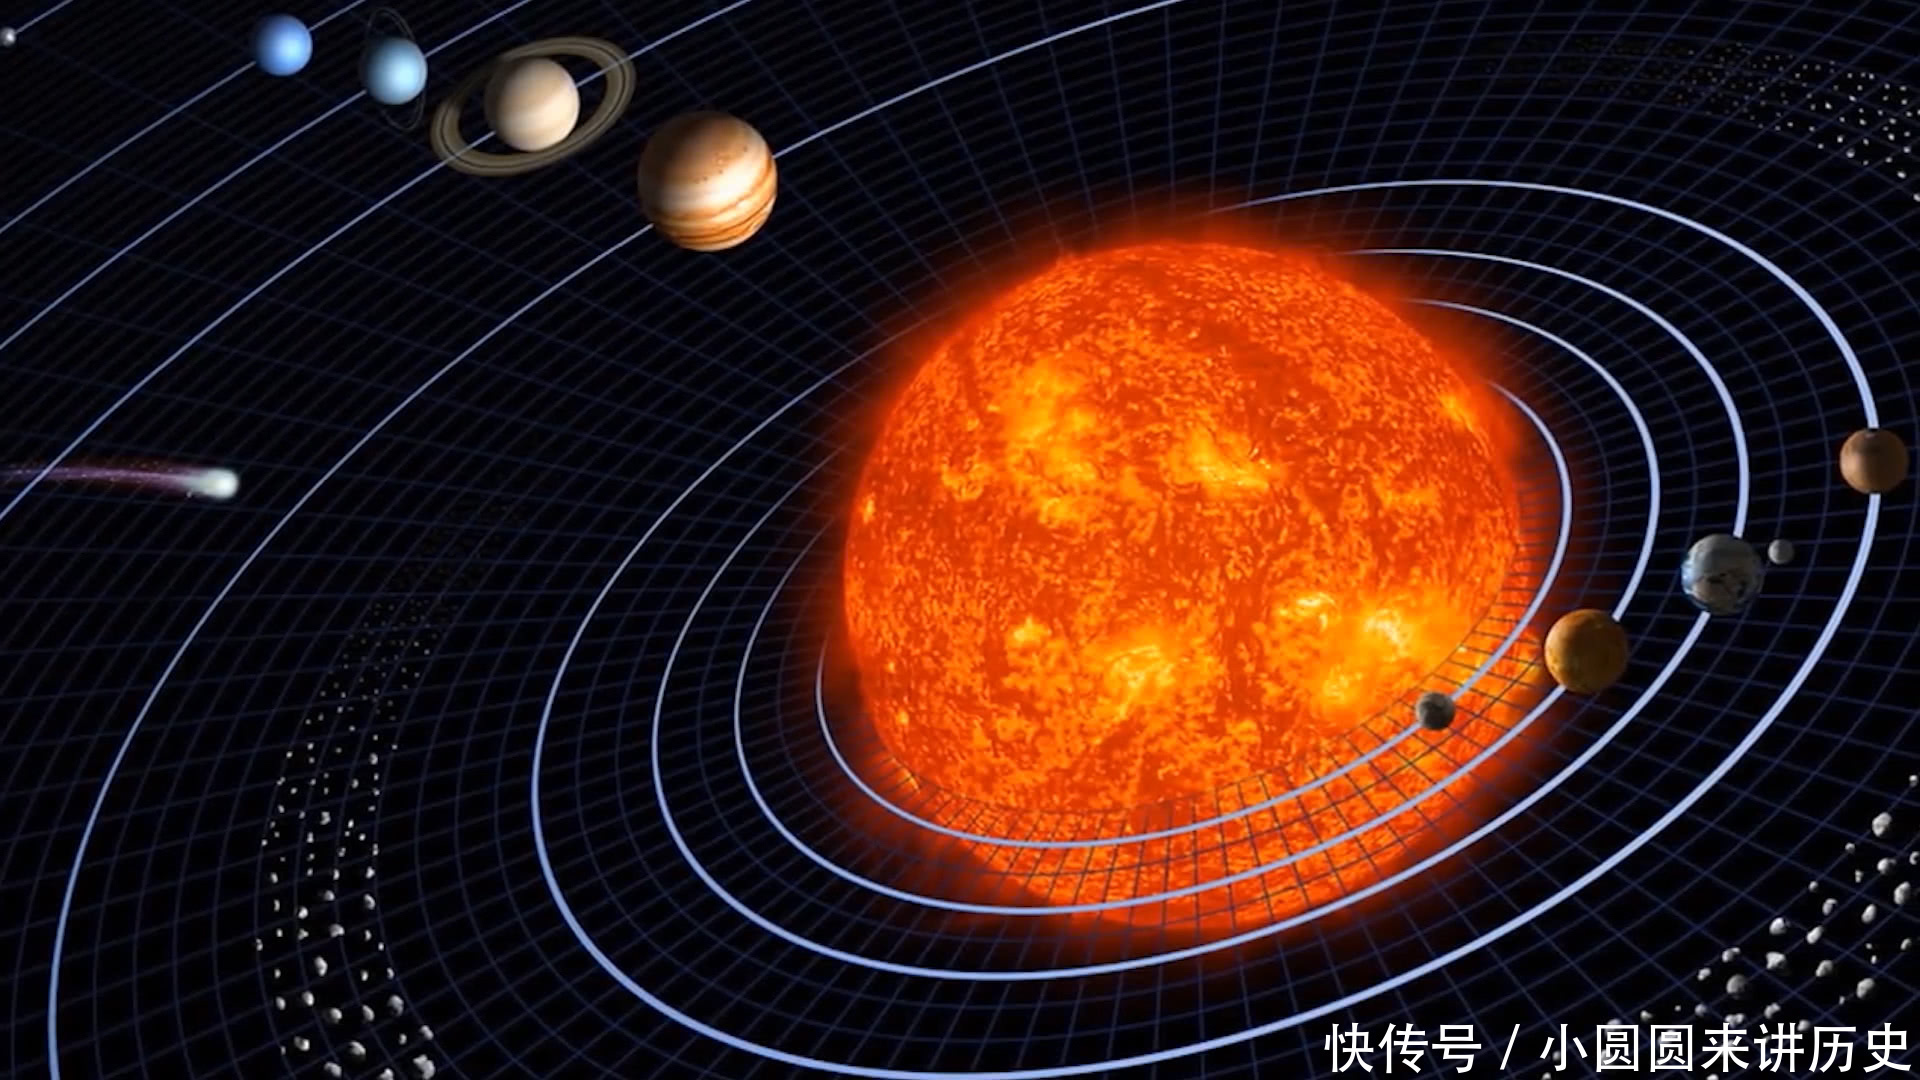 太阳 占太阳系总质量99。86%中心天体,我们赖